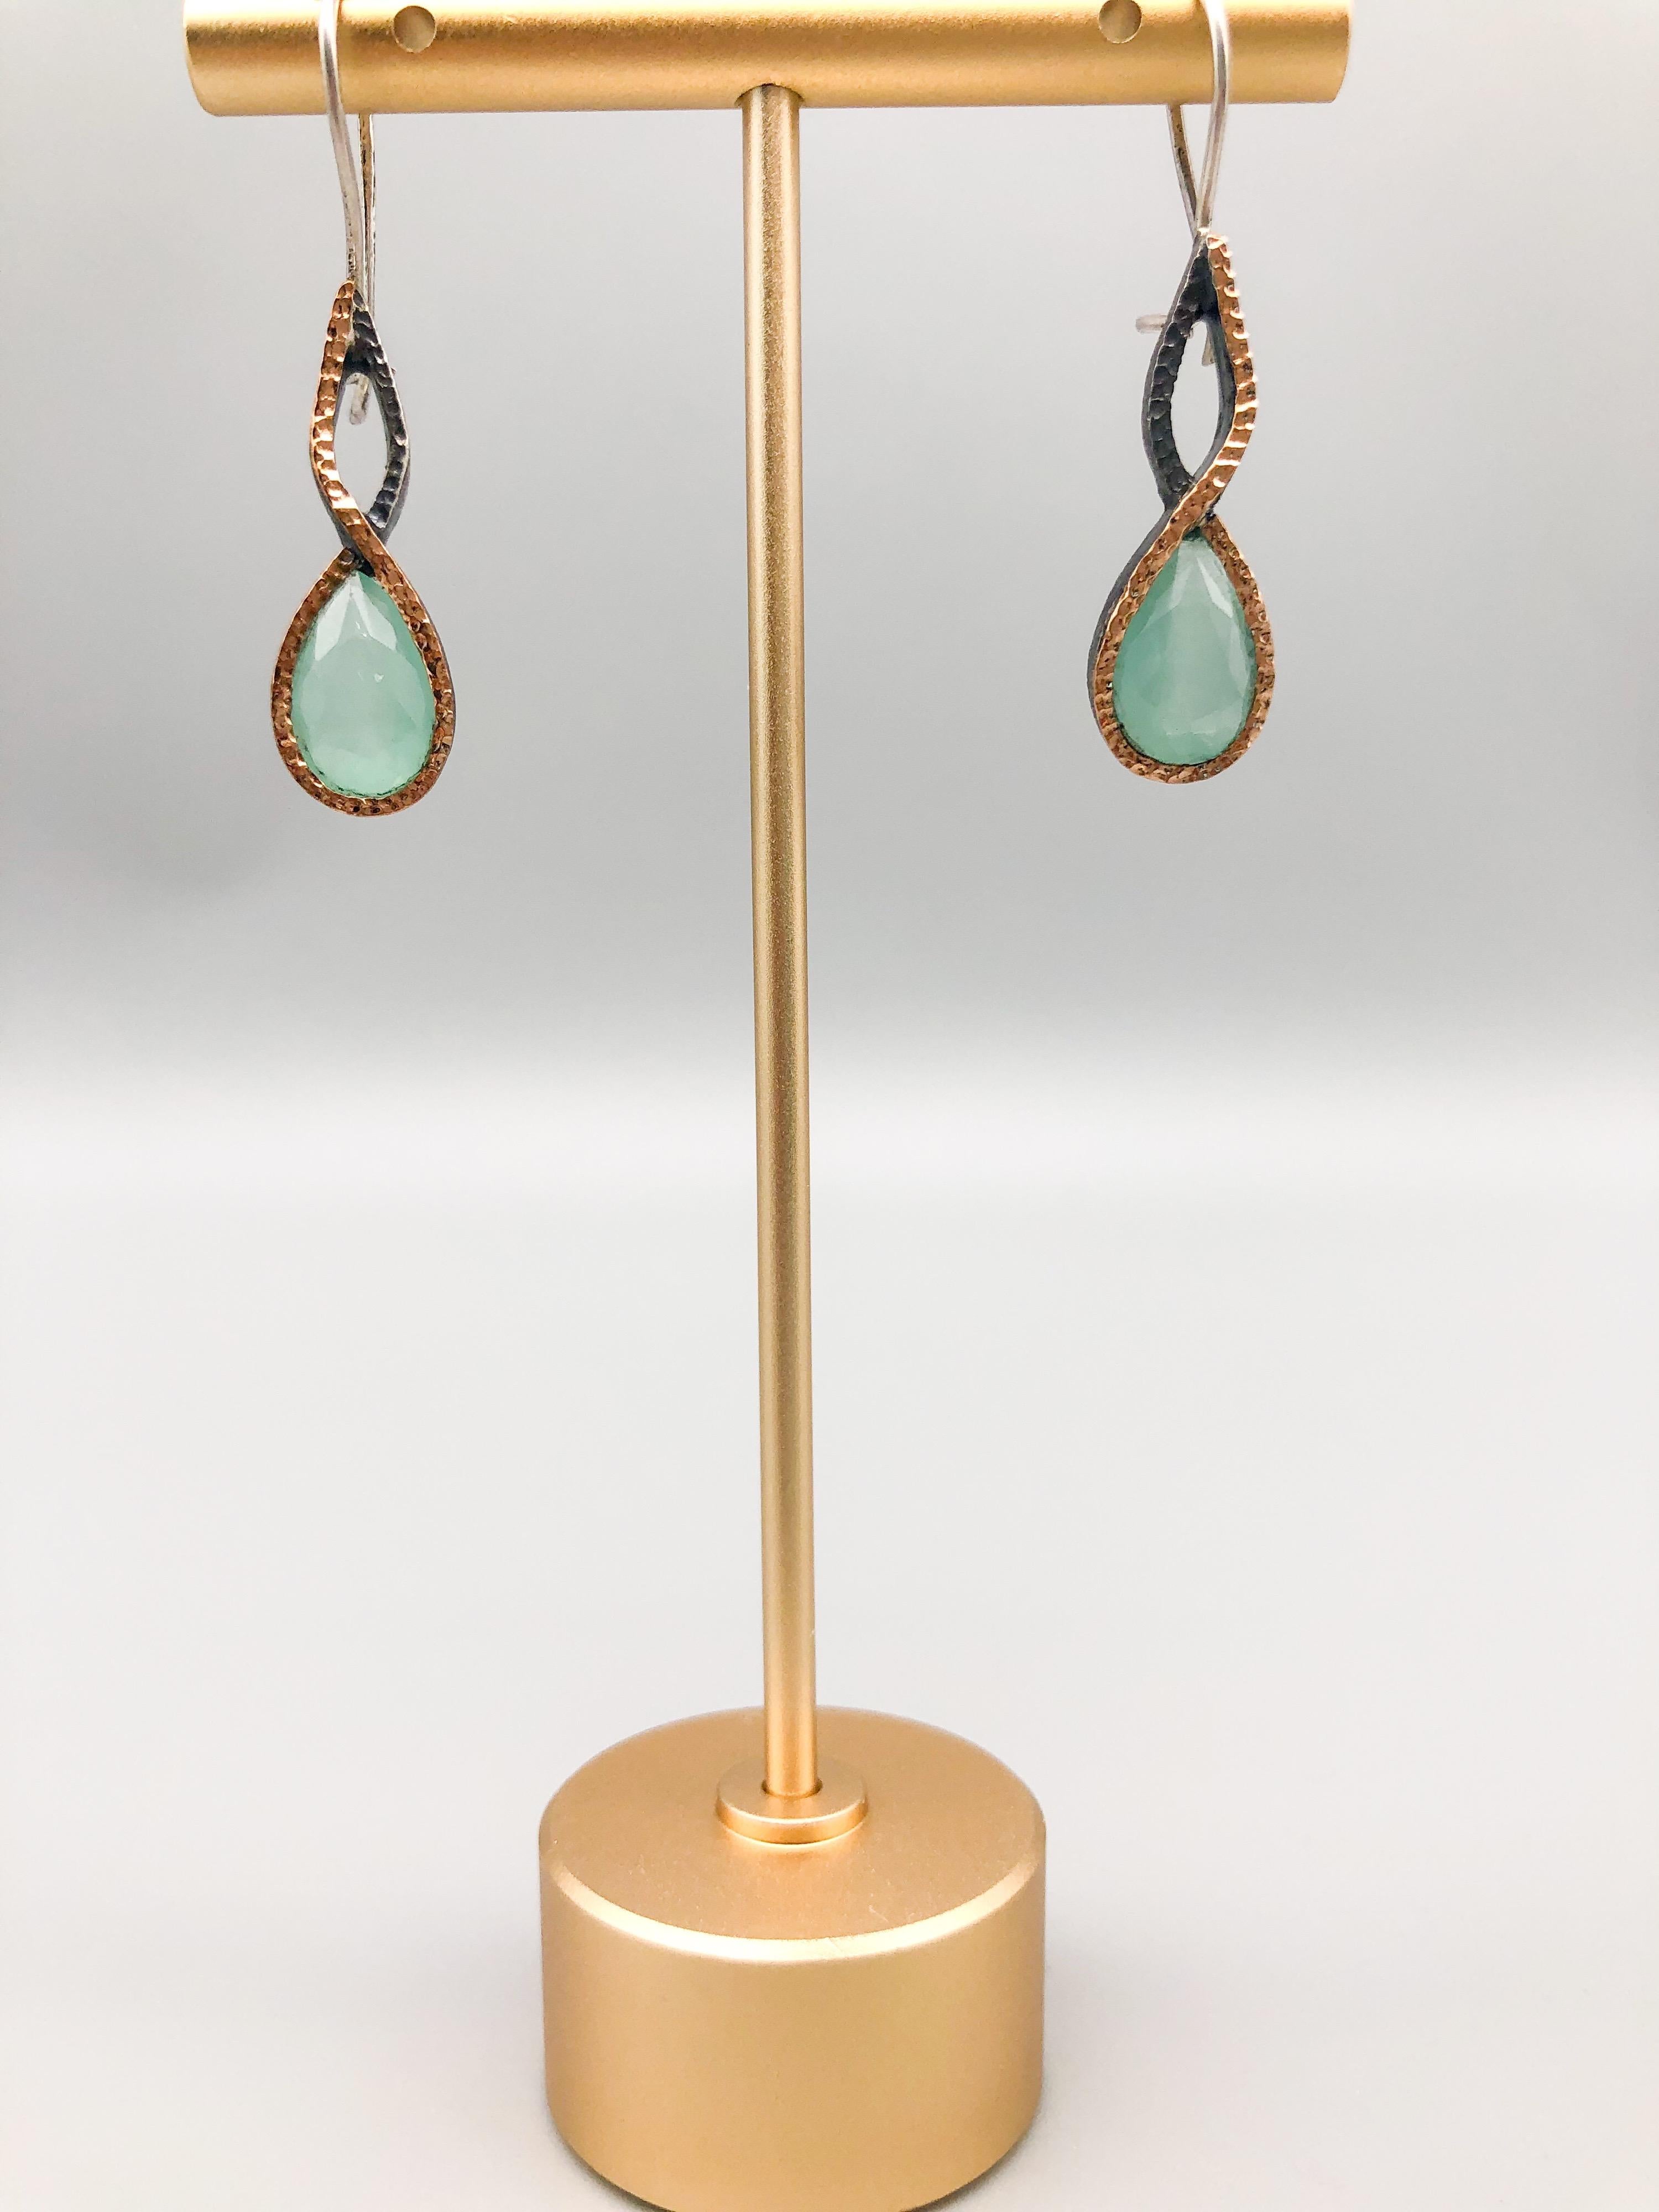 A.Jeschel Aquamarine twisted drop earrings For Sale 1